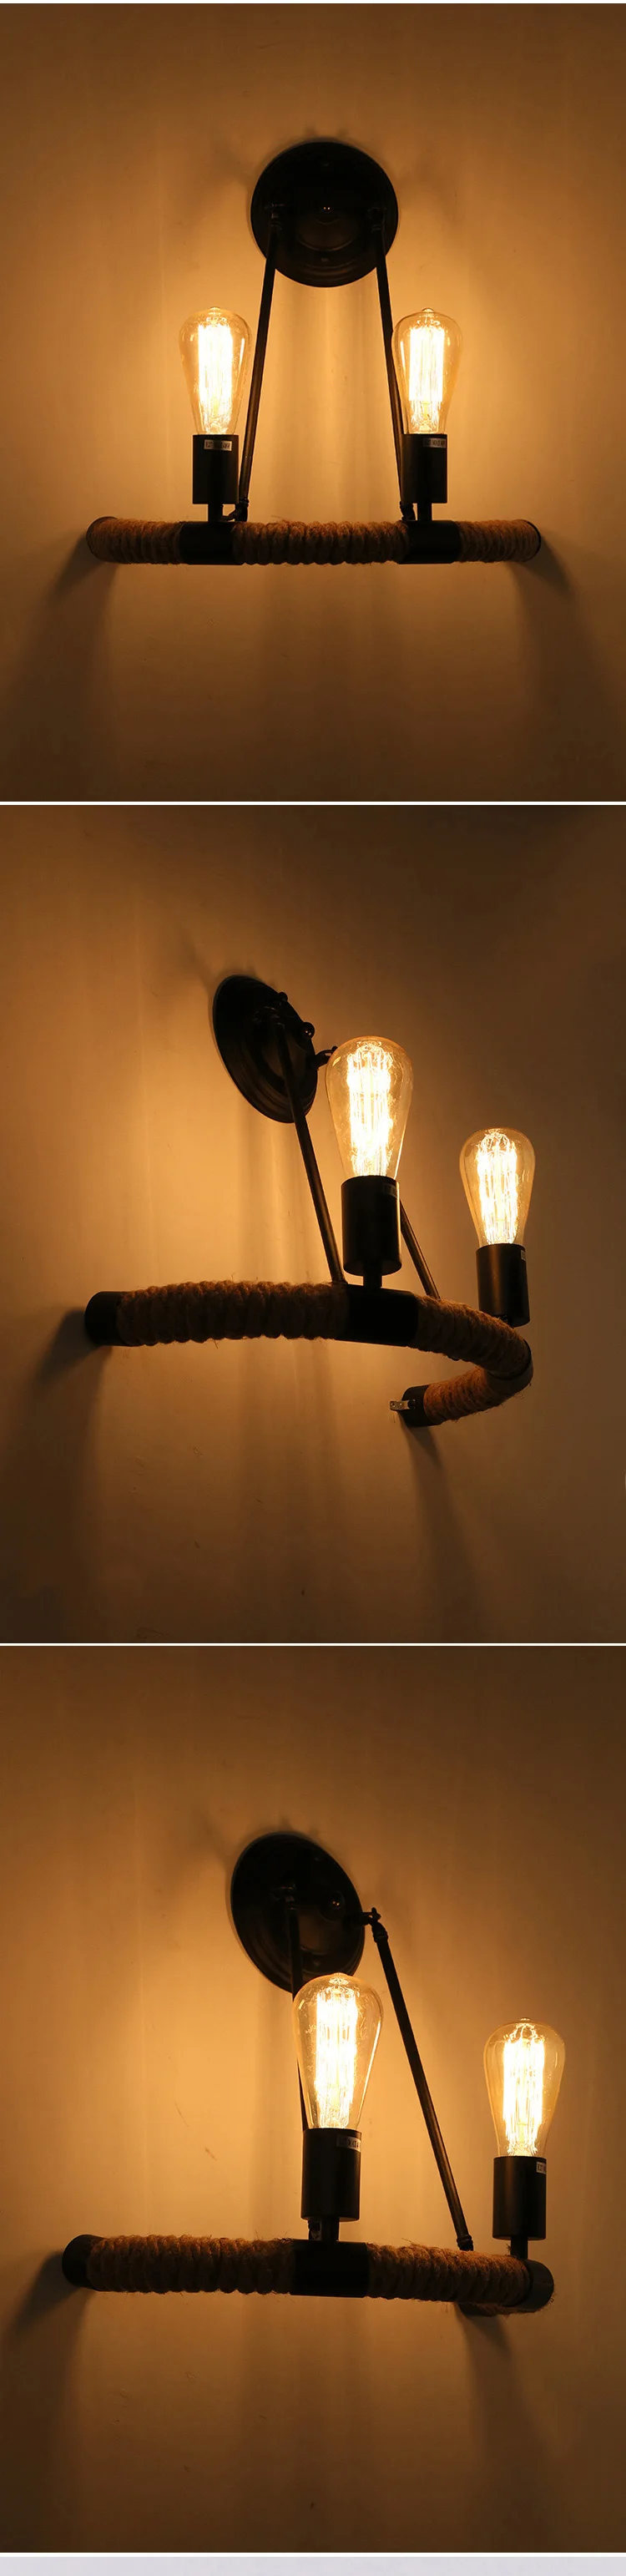 Креативный пеньковый Канат настенный светильник Промышленный Лофт настенный светильник для дома Бар Кафе магазины винтажный Ретро настенный светильник